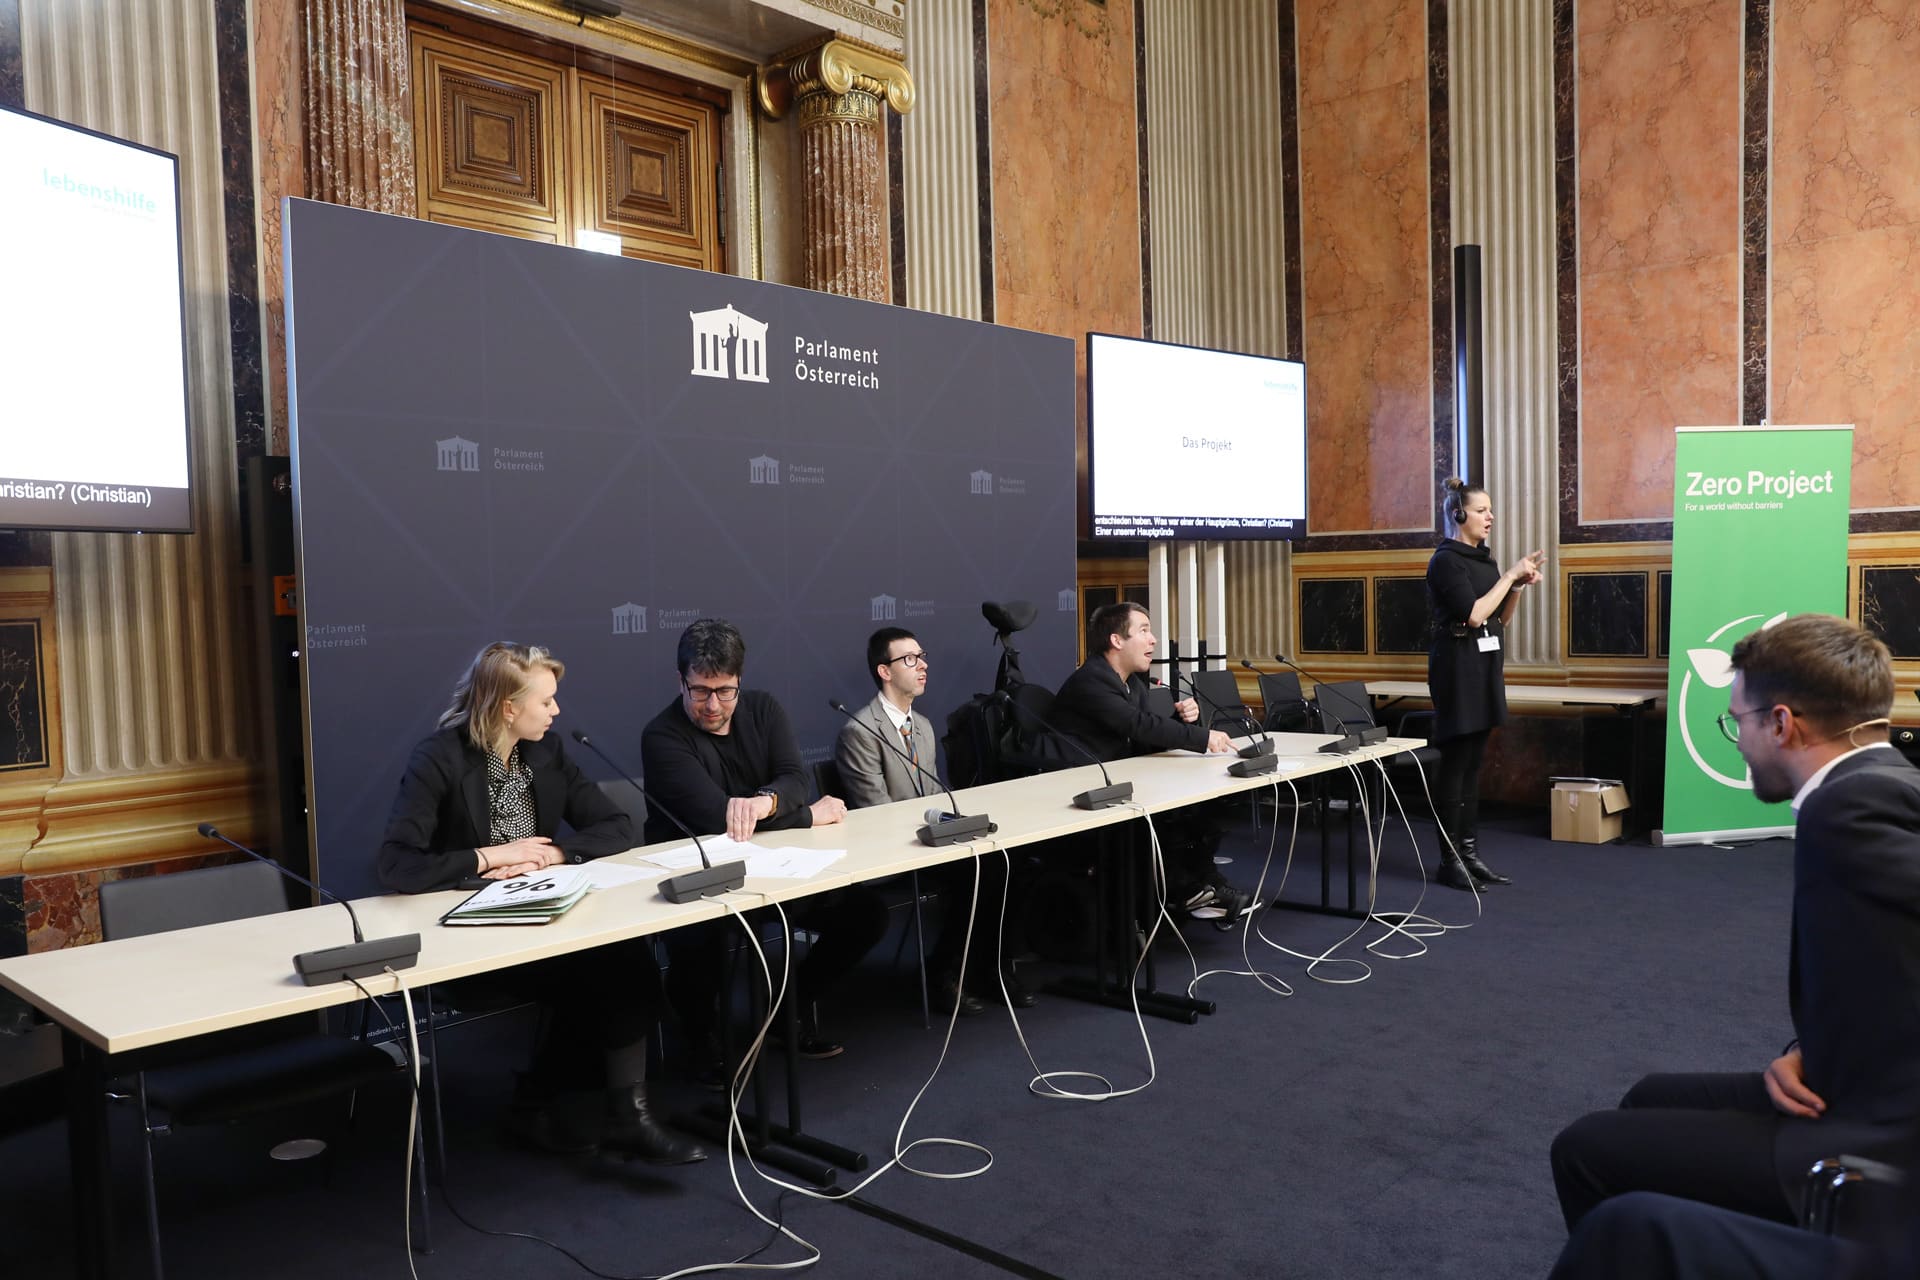 Drei Männer, zwei davon mit Behinderung und eine Frau sitzen im Anzug im österreichischen Parlament und halten Rede